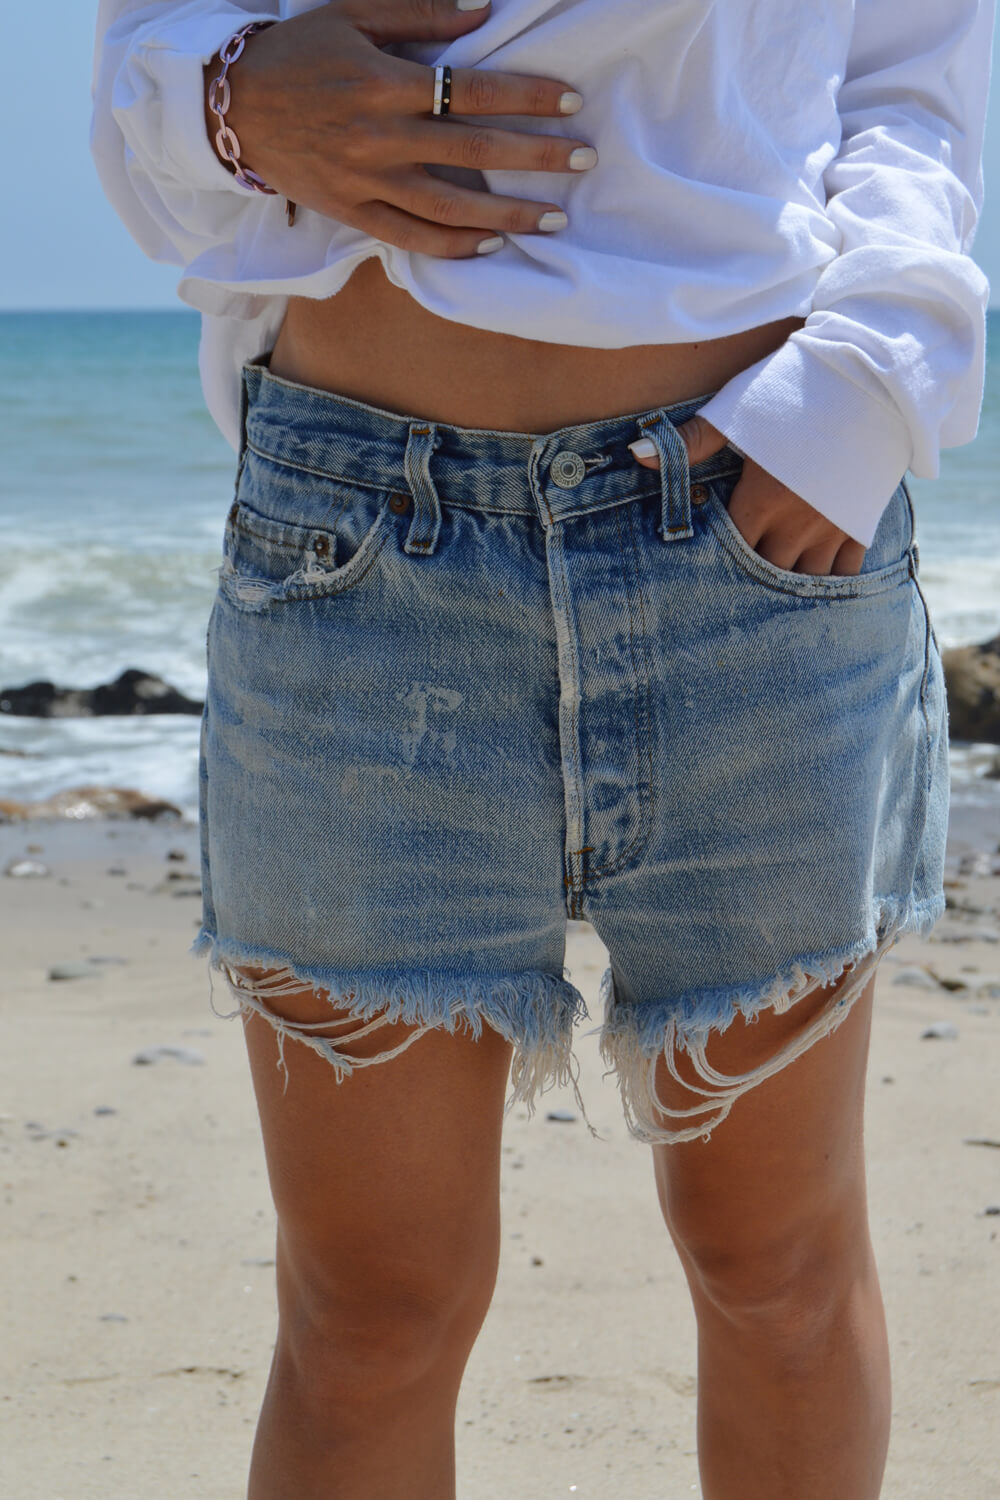 vintage denim shorts - worn blue - waist size 30